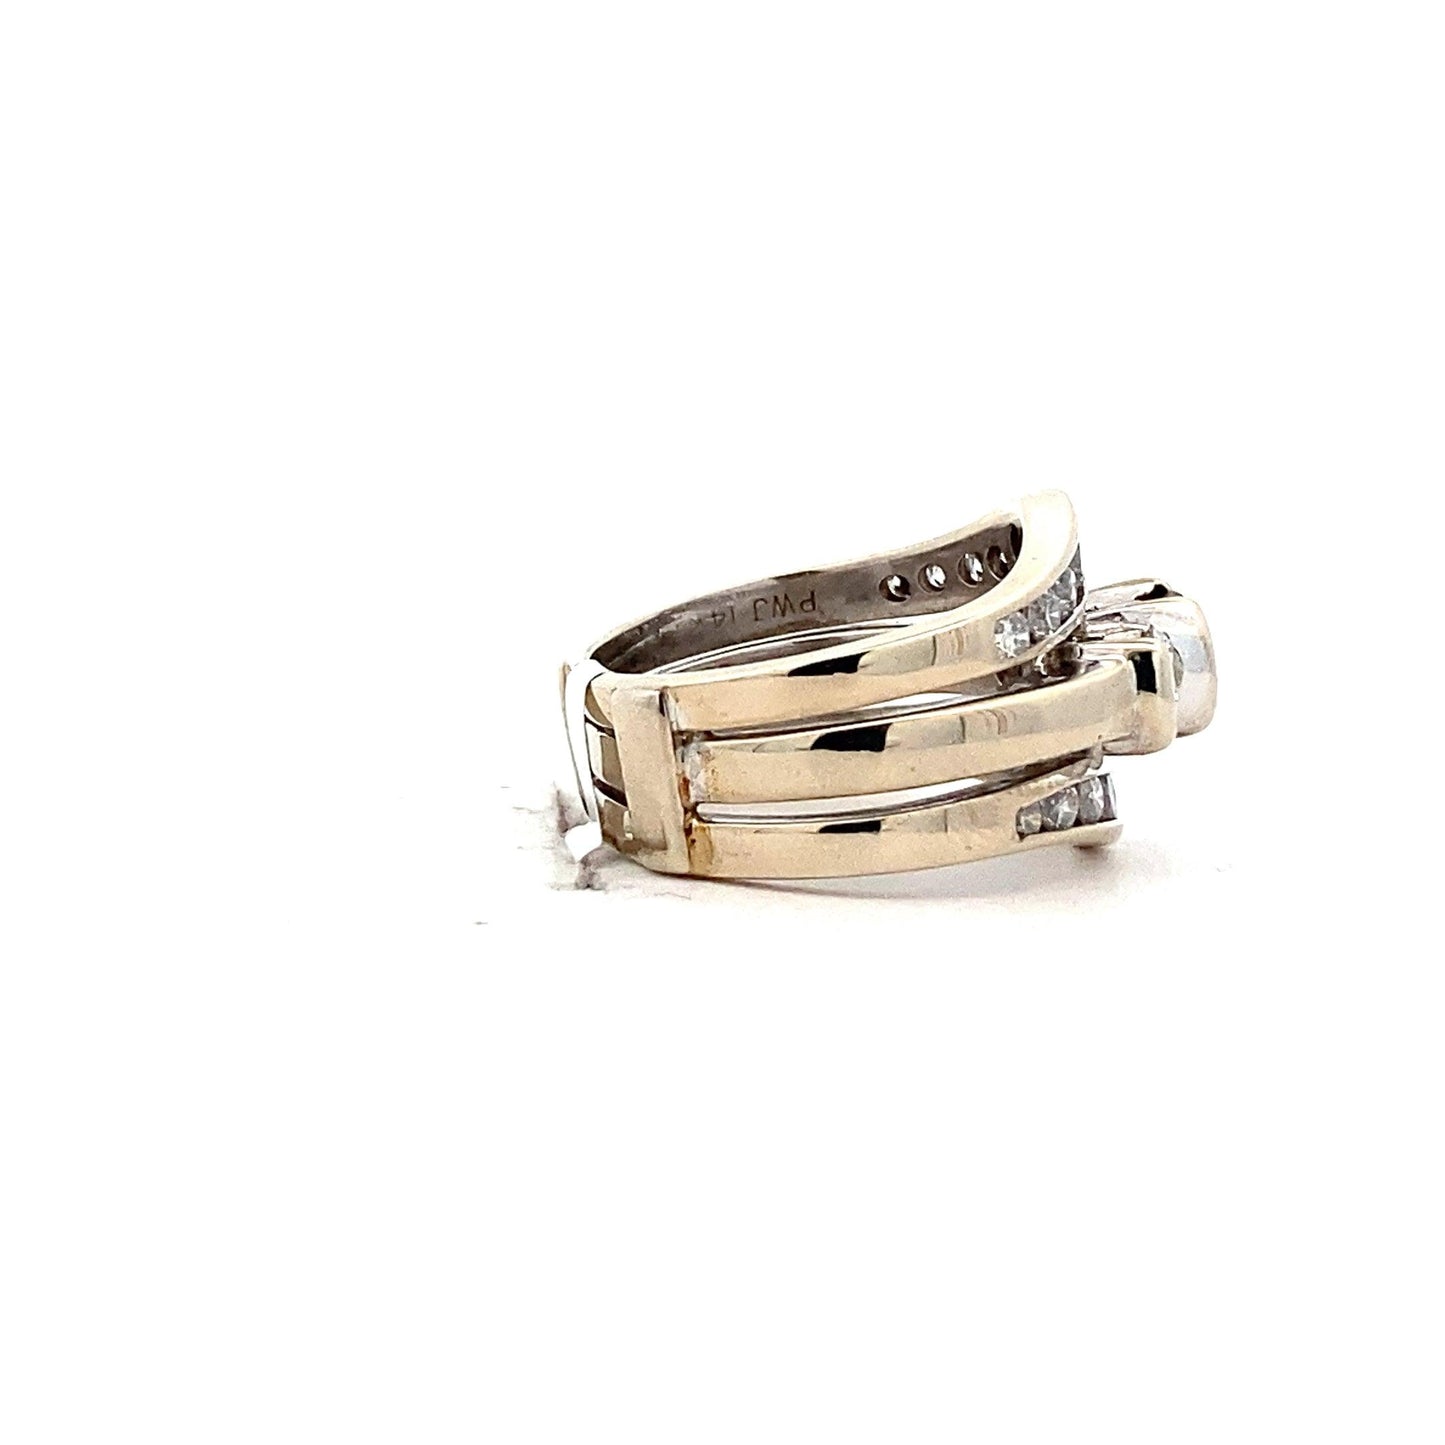 14K White Gold Diamond Engagement & Wedding Ring Set With Guard - 1.75ct - ipawnishop.com